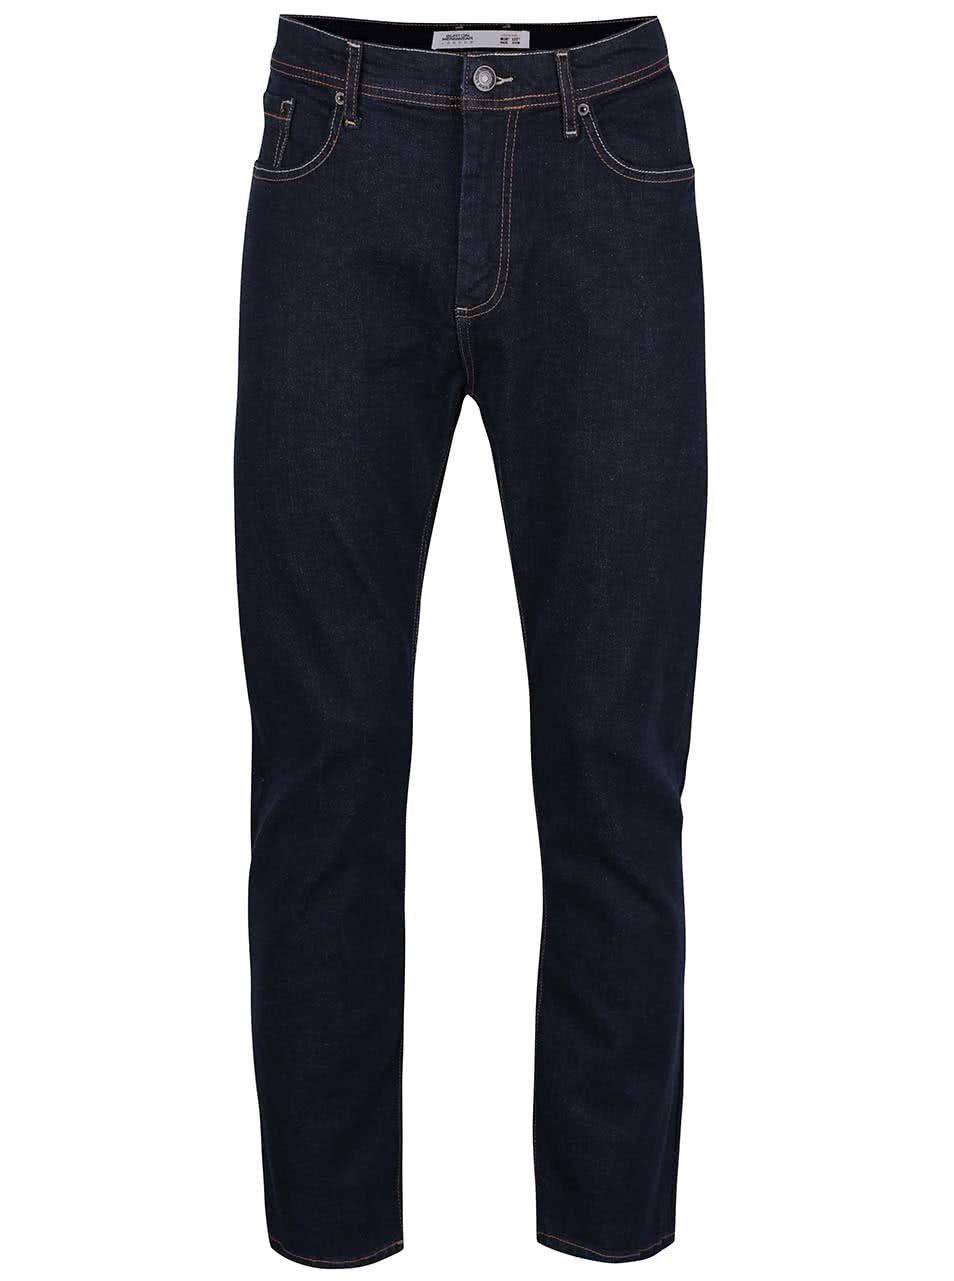 Tmavě modré džíny s hnědým prošíváním Burton Menswear London